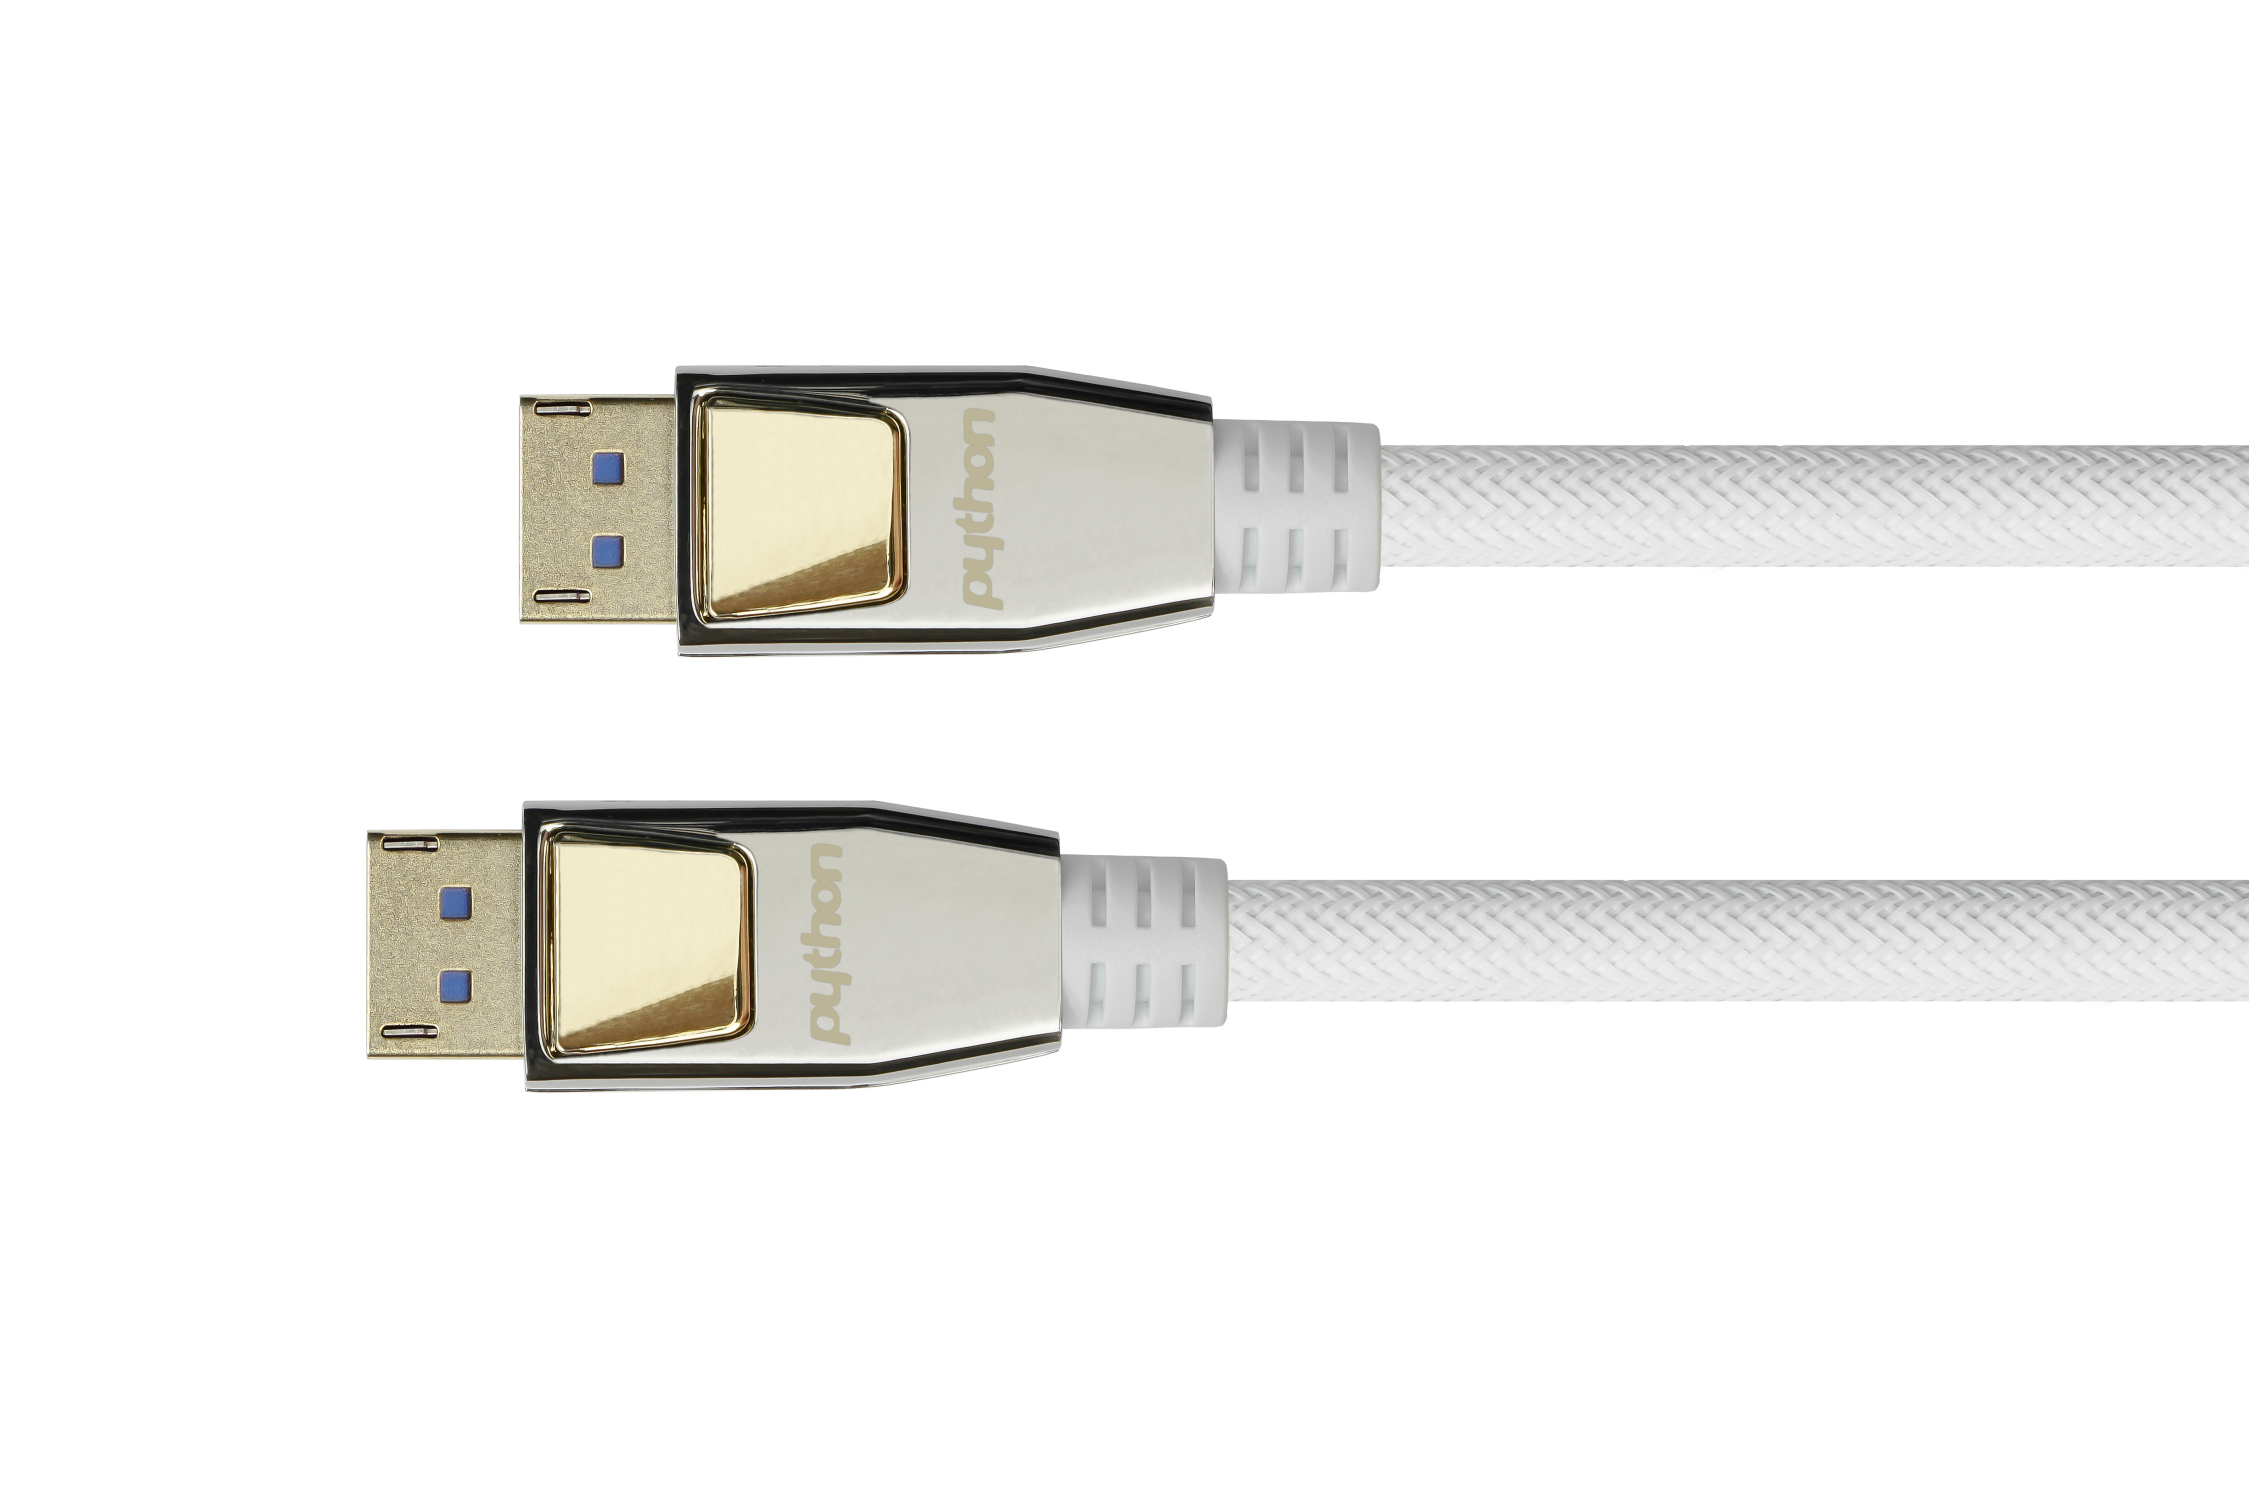 PREMIUM DisplayPort 2.0 Kabel, 54 Gbit/s, UHBR 13.5, 4K@240Hz / 8K@60Hz, Nylongeflecht weiß, 0,5m